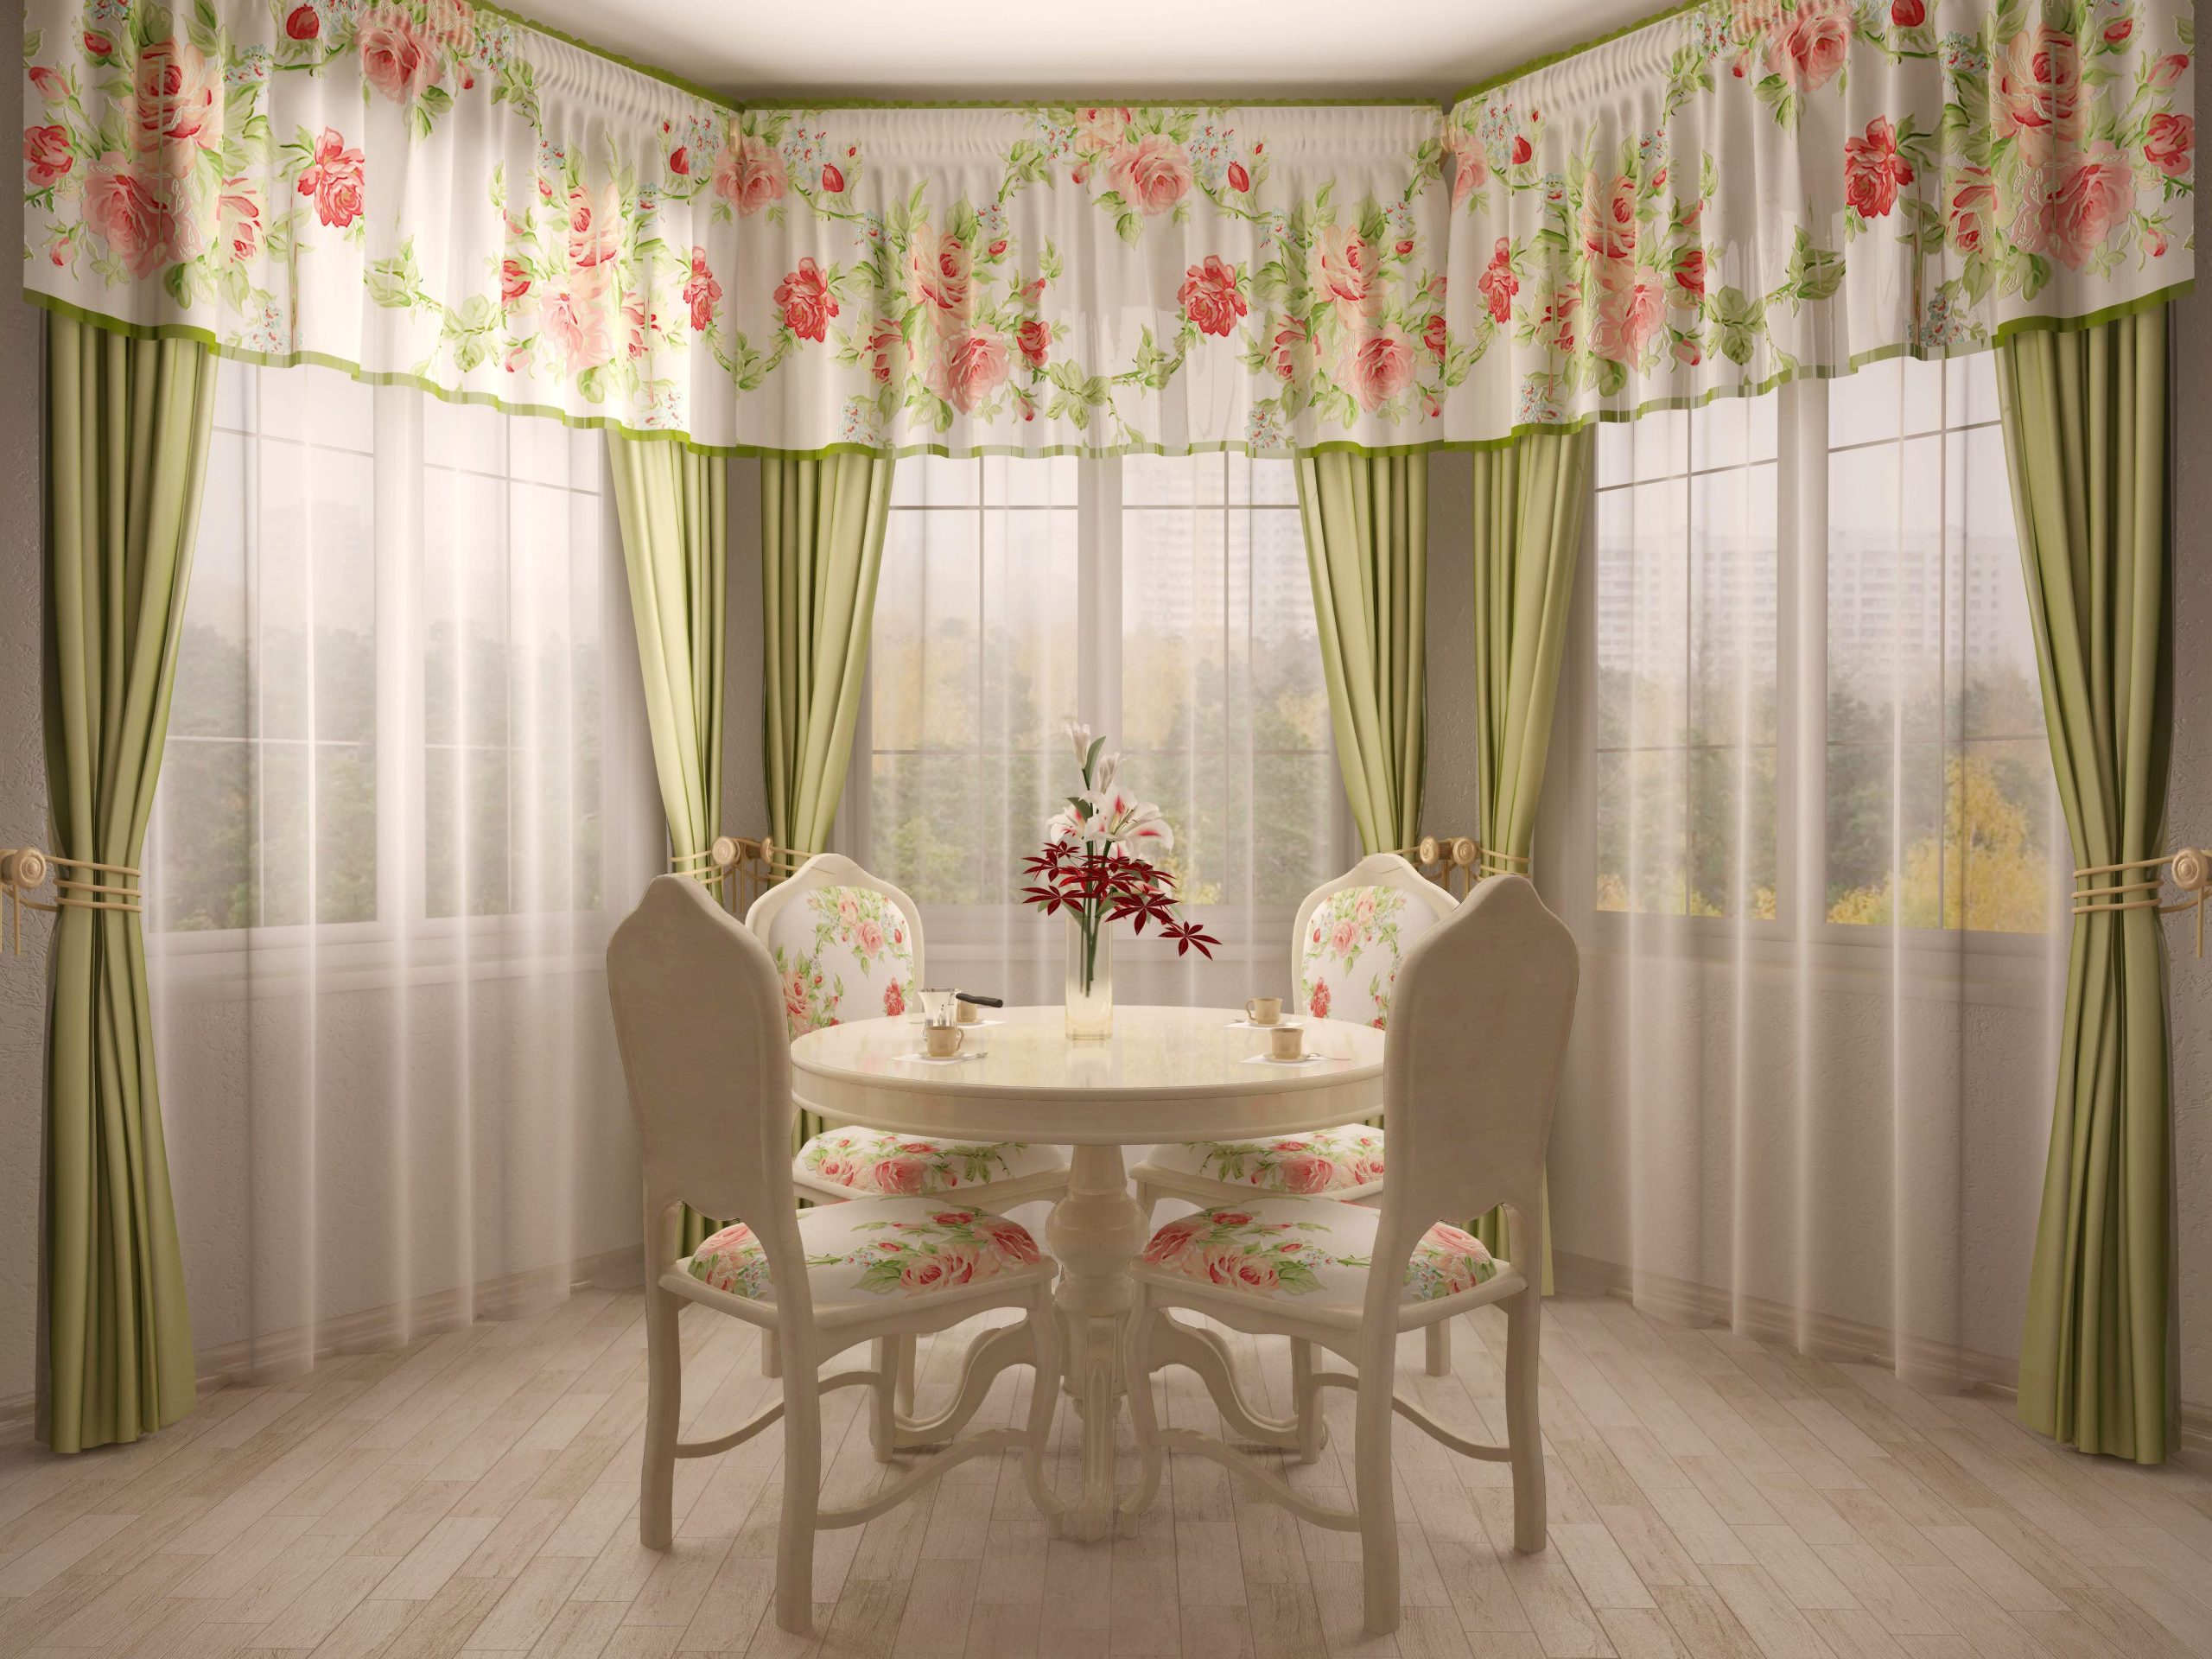 Floral White & Pistachio Curtain Ideas